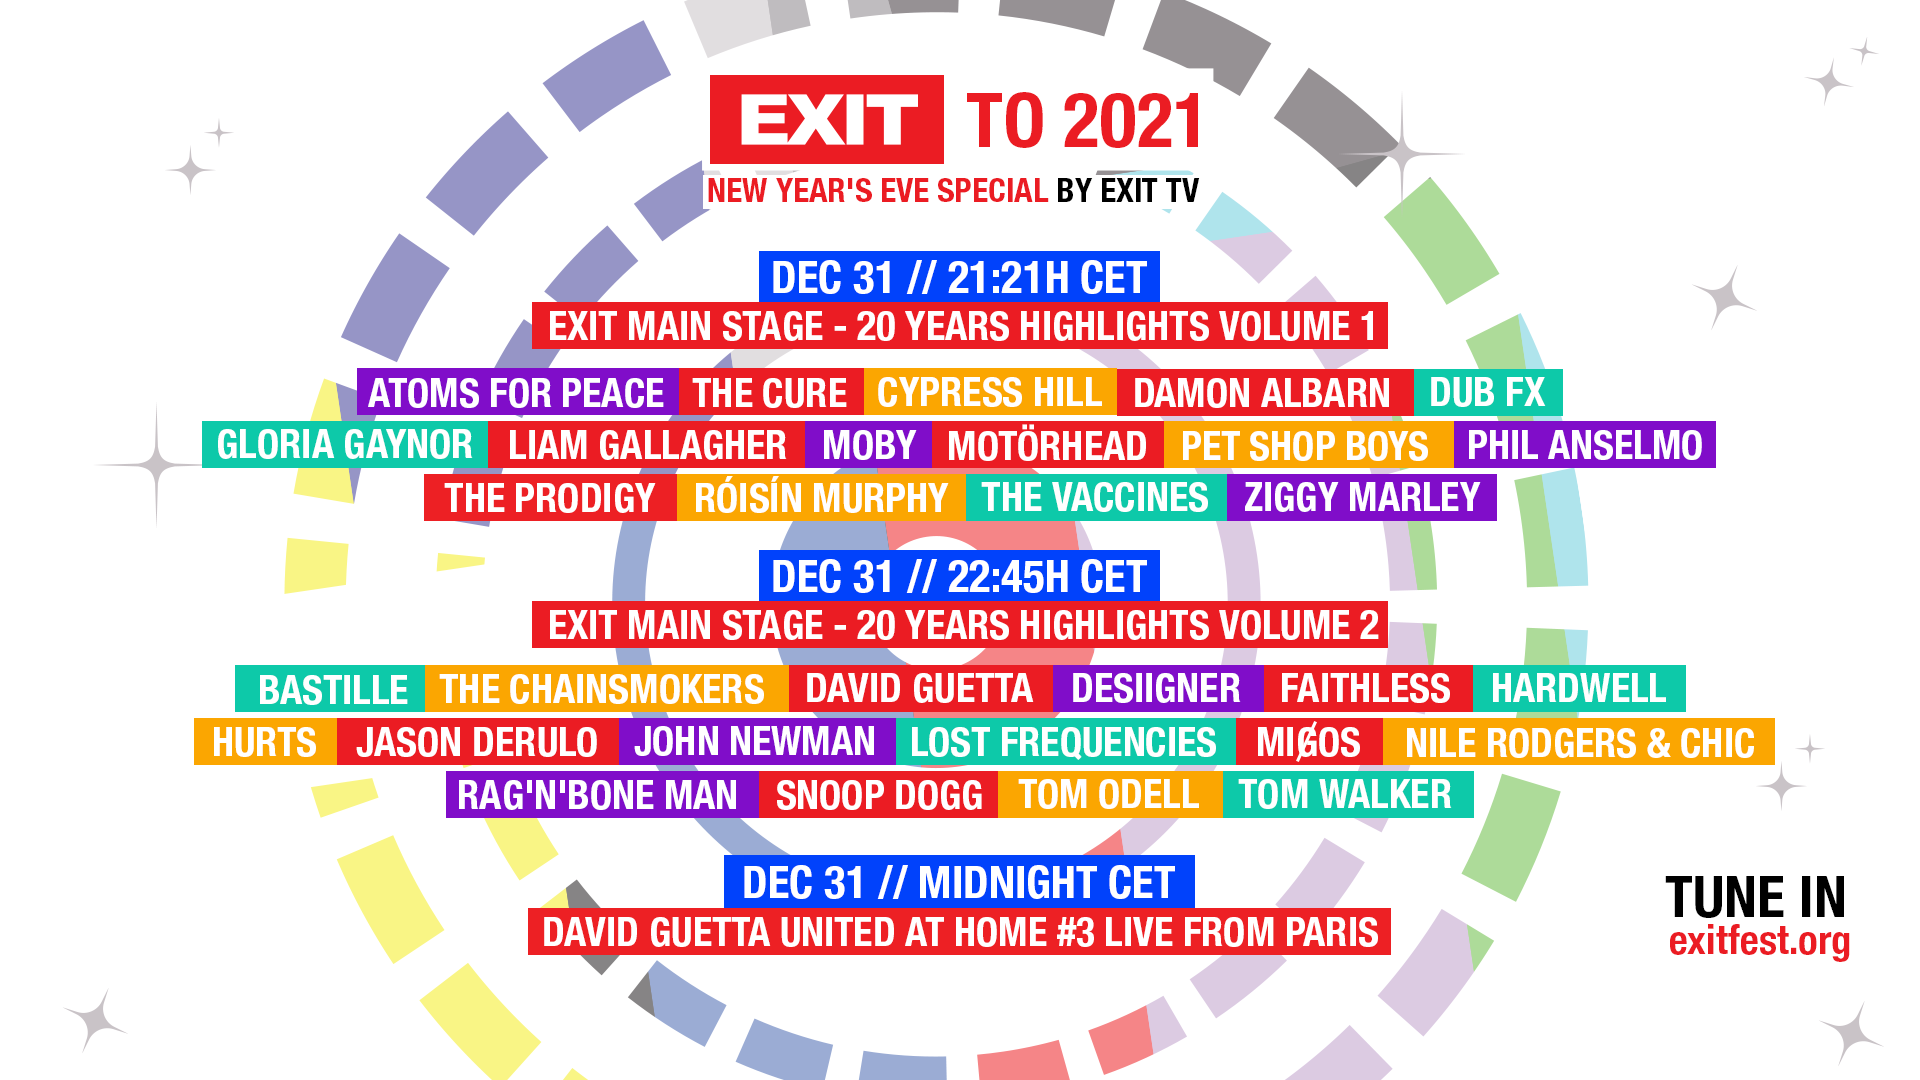 Cypressi, Snoop i Hardwell pojačavaju Exitov novogodišnji program,specijalan set Davida Guette tačno u ponoć!